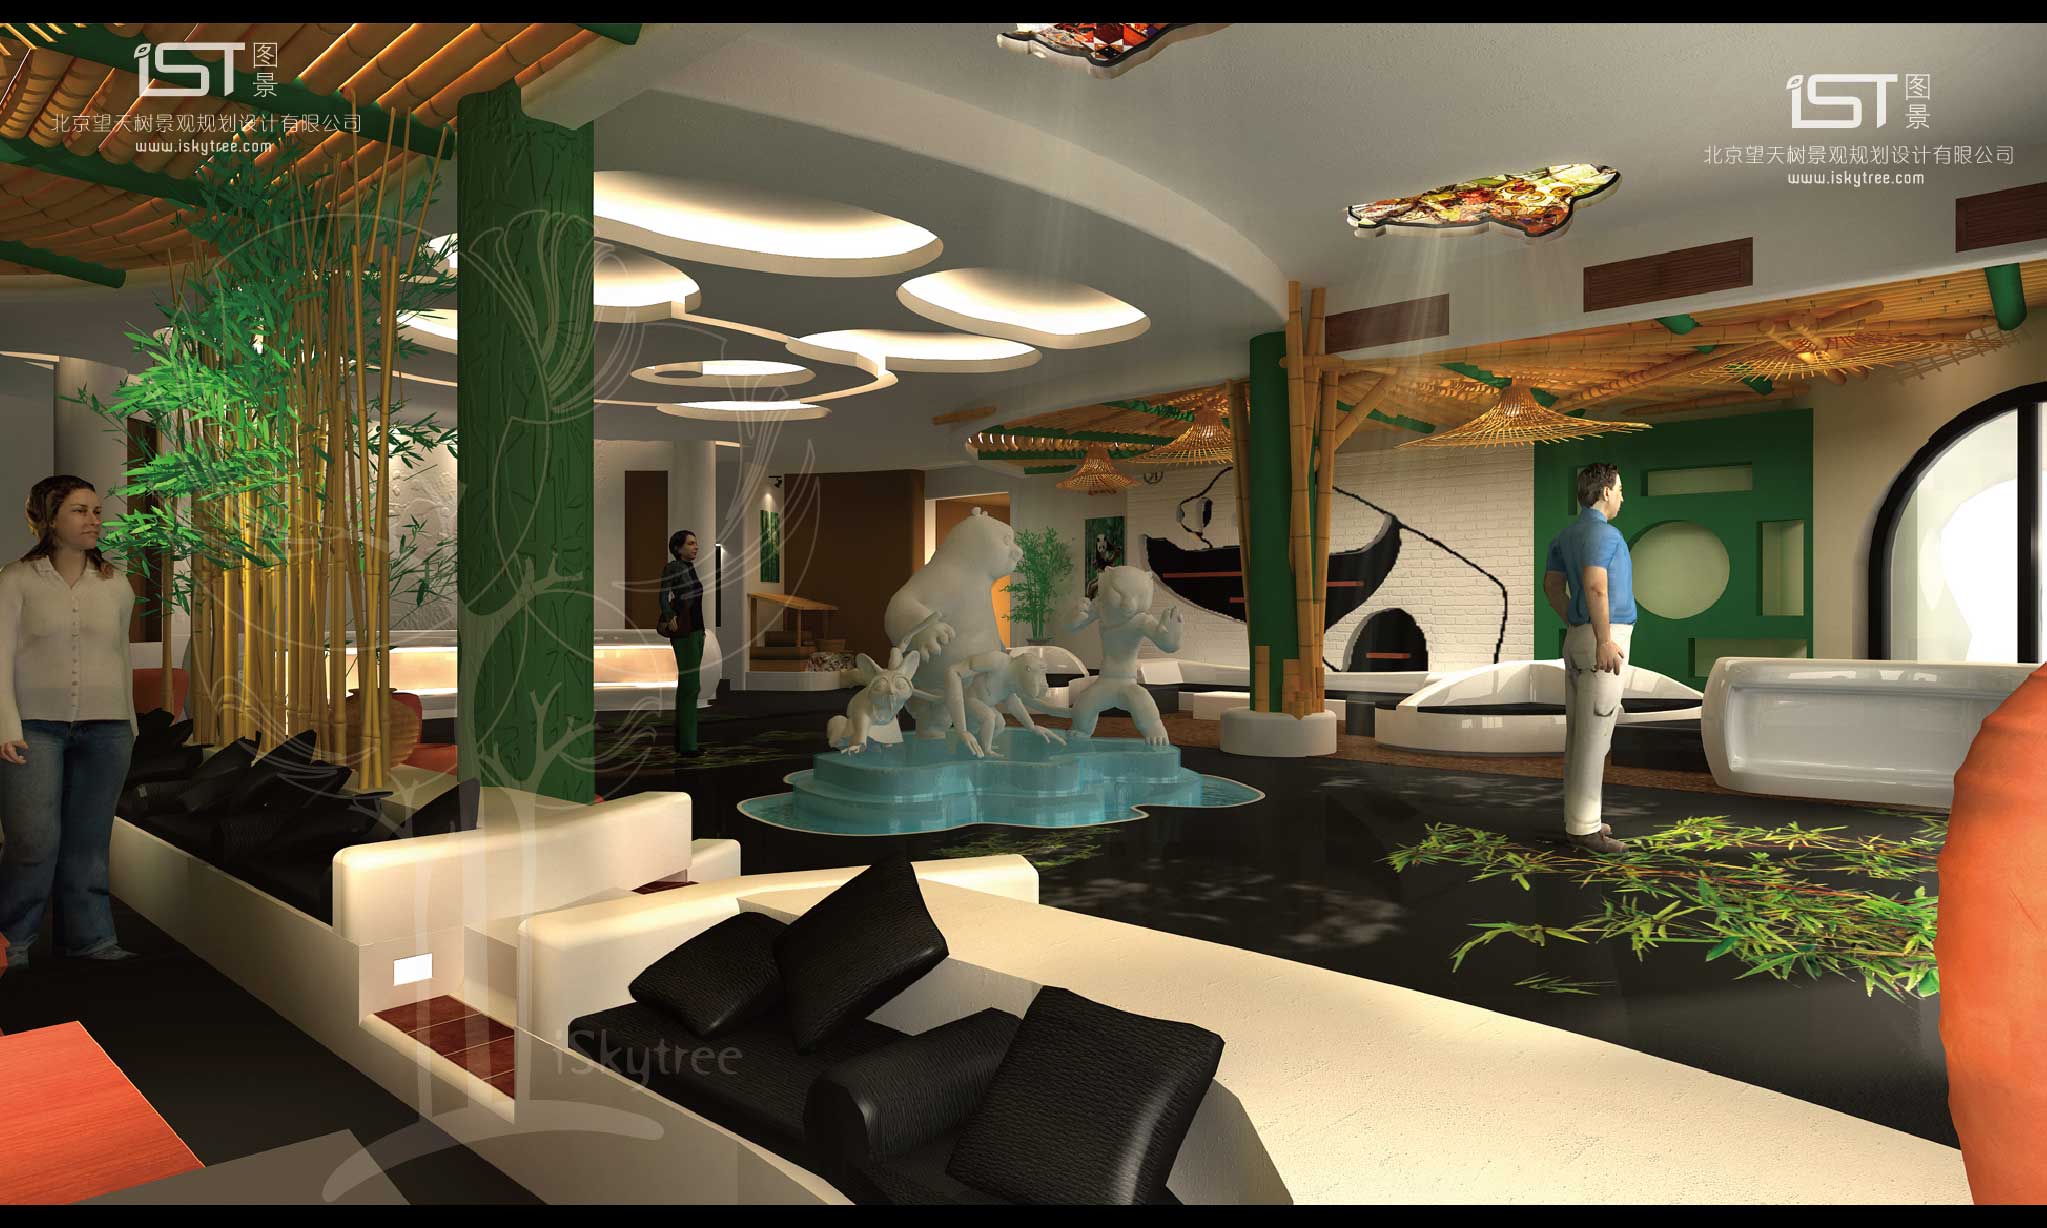 熊貓山莊主題酒店大堂設計方案效果表現